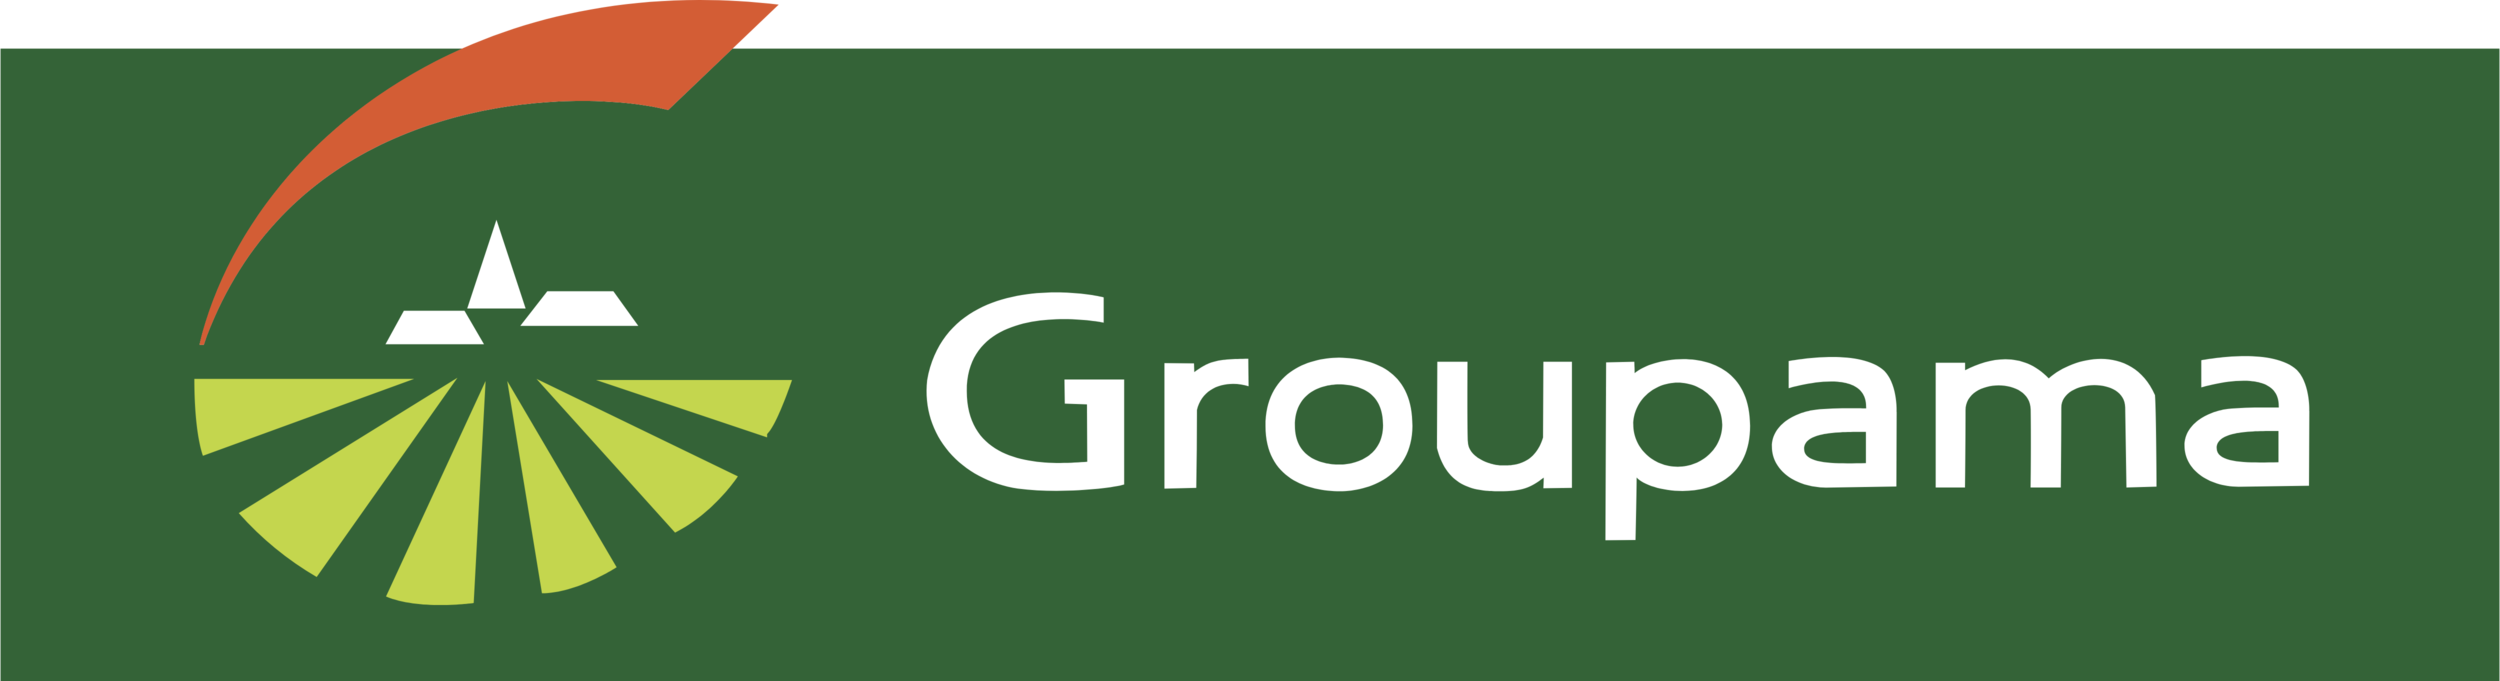 Groupama_logo_green.png